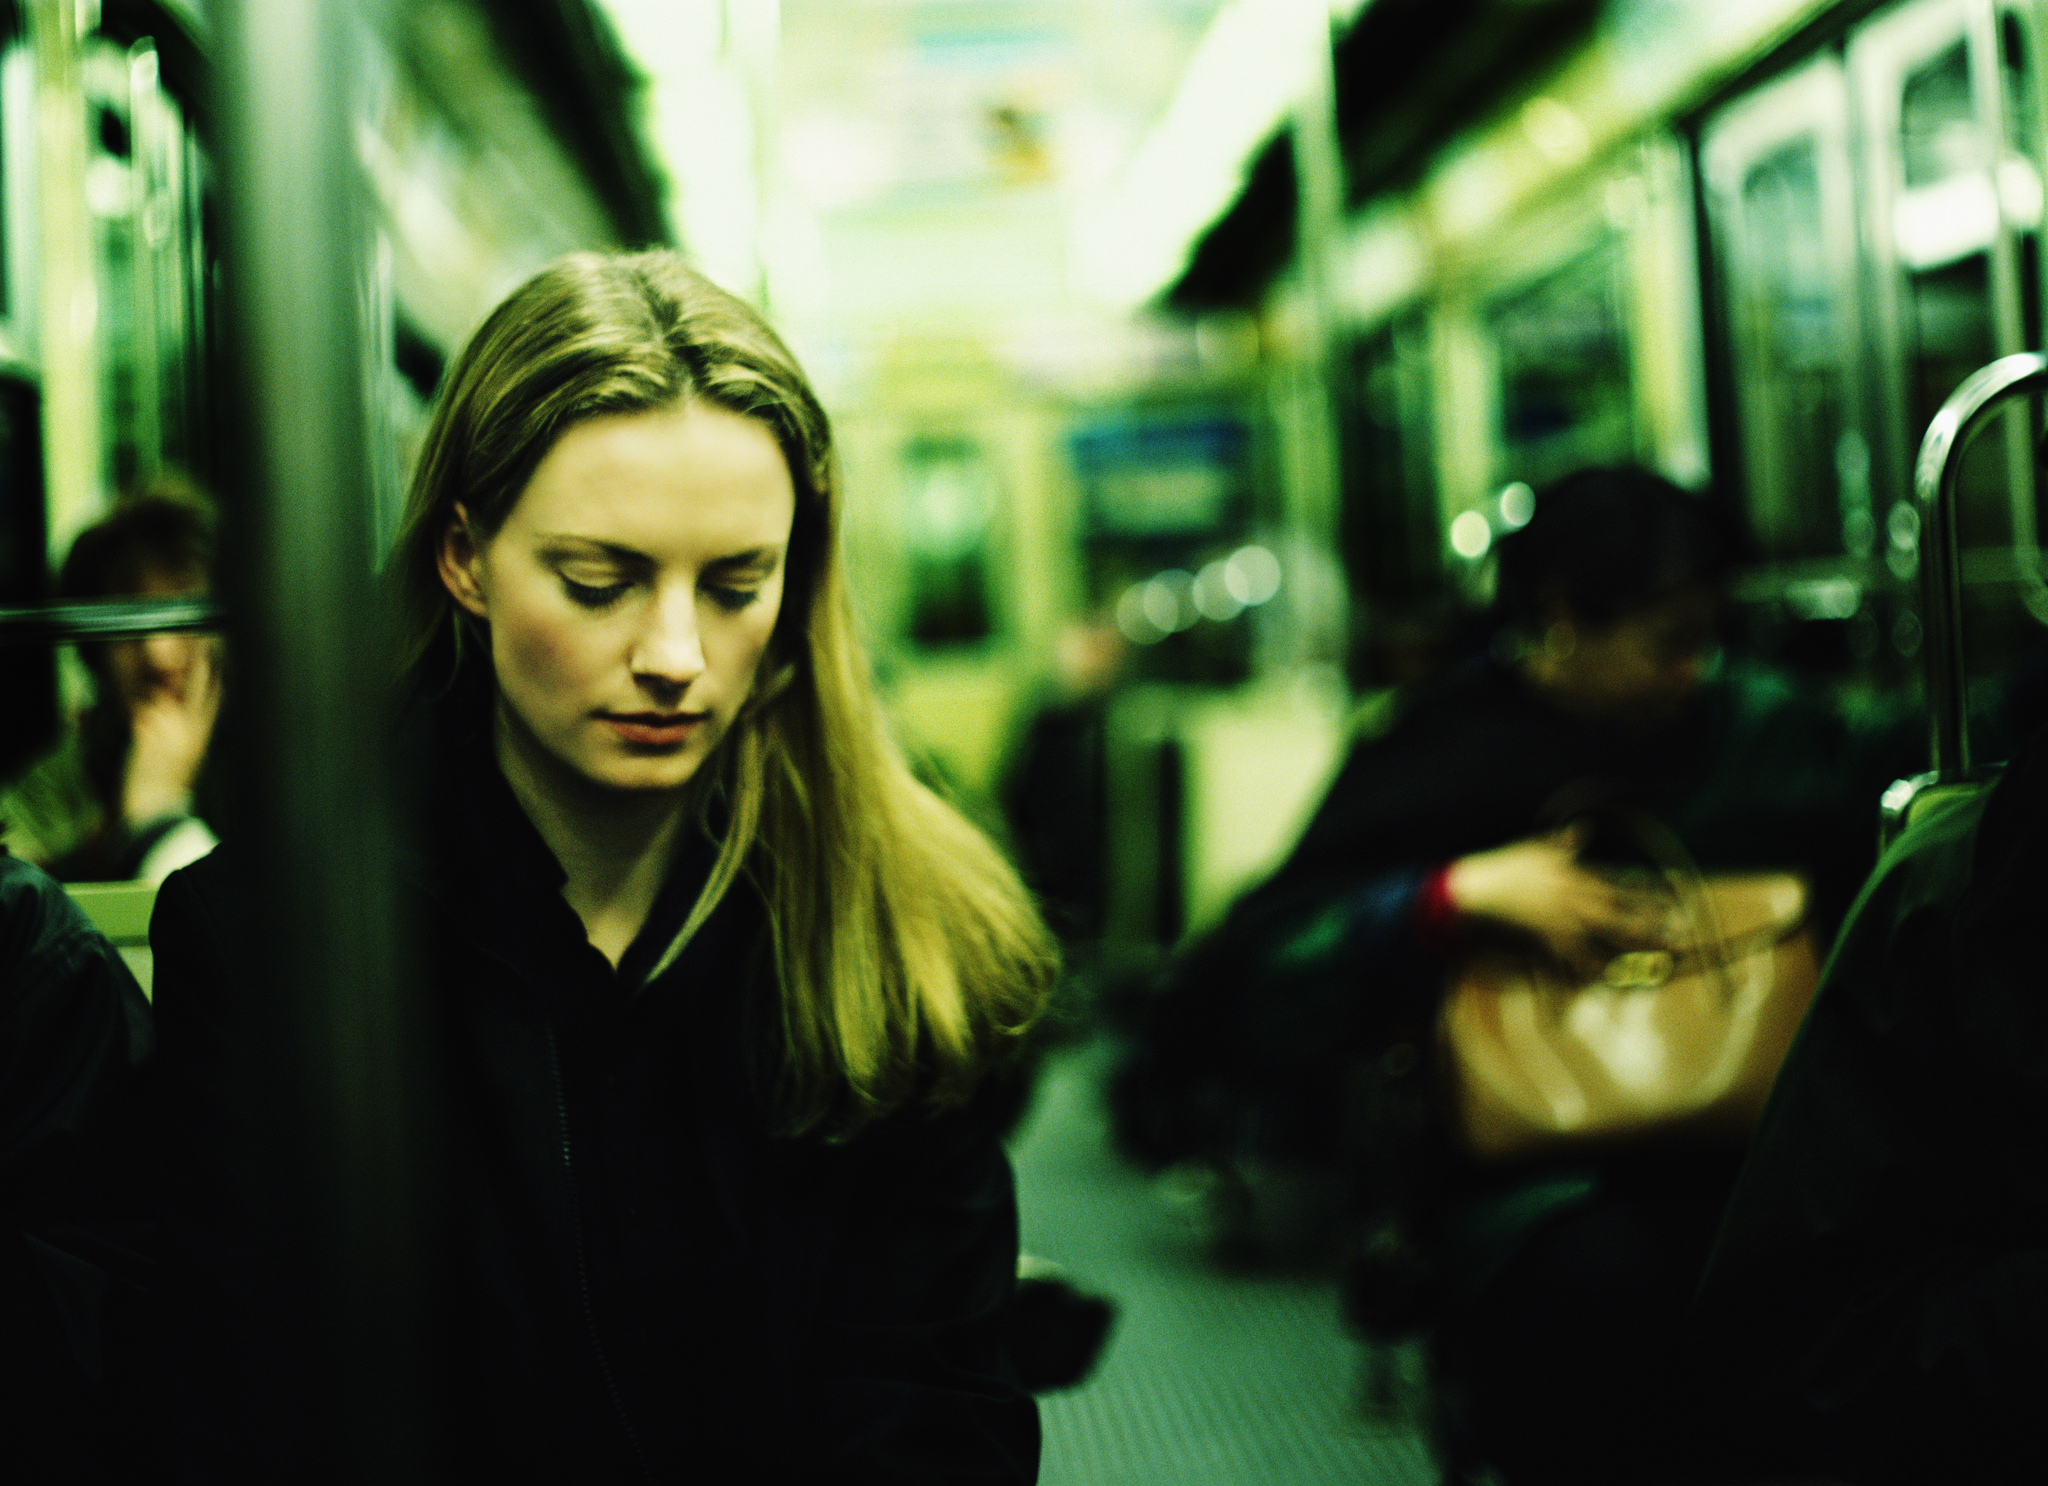 Un viaje en metro puede ser perfecto para hacer un ejercicio de atención plena.